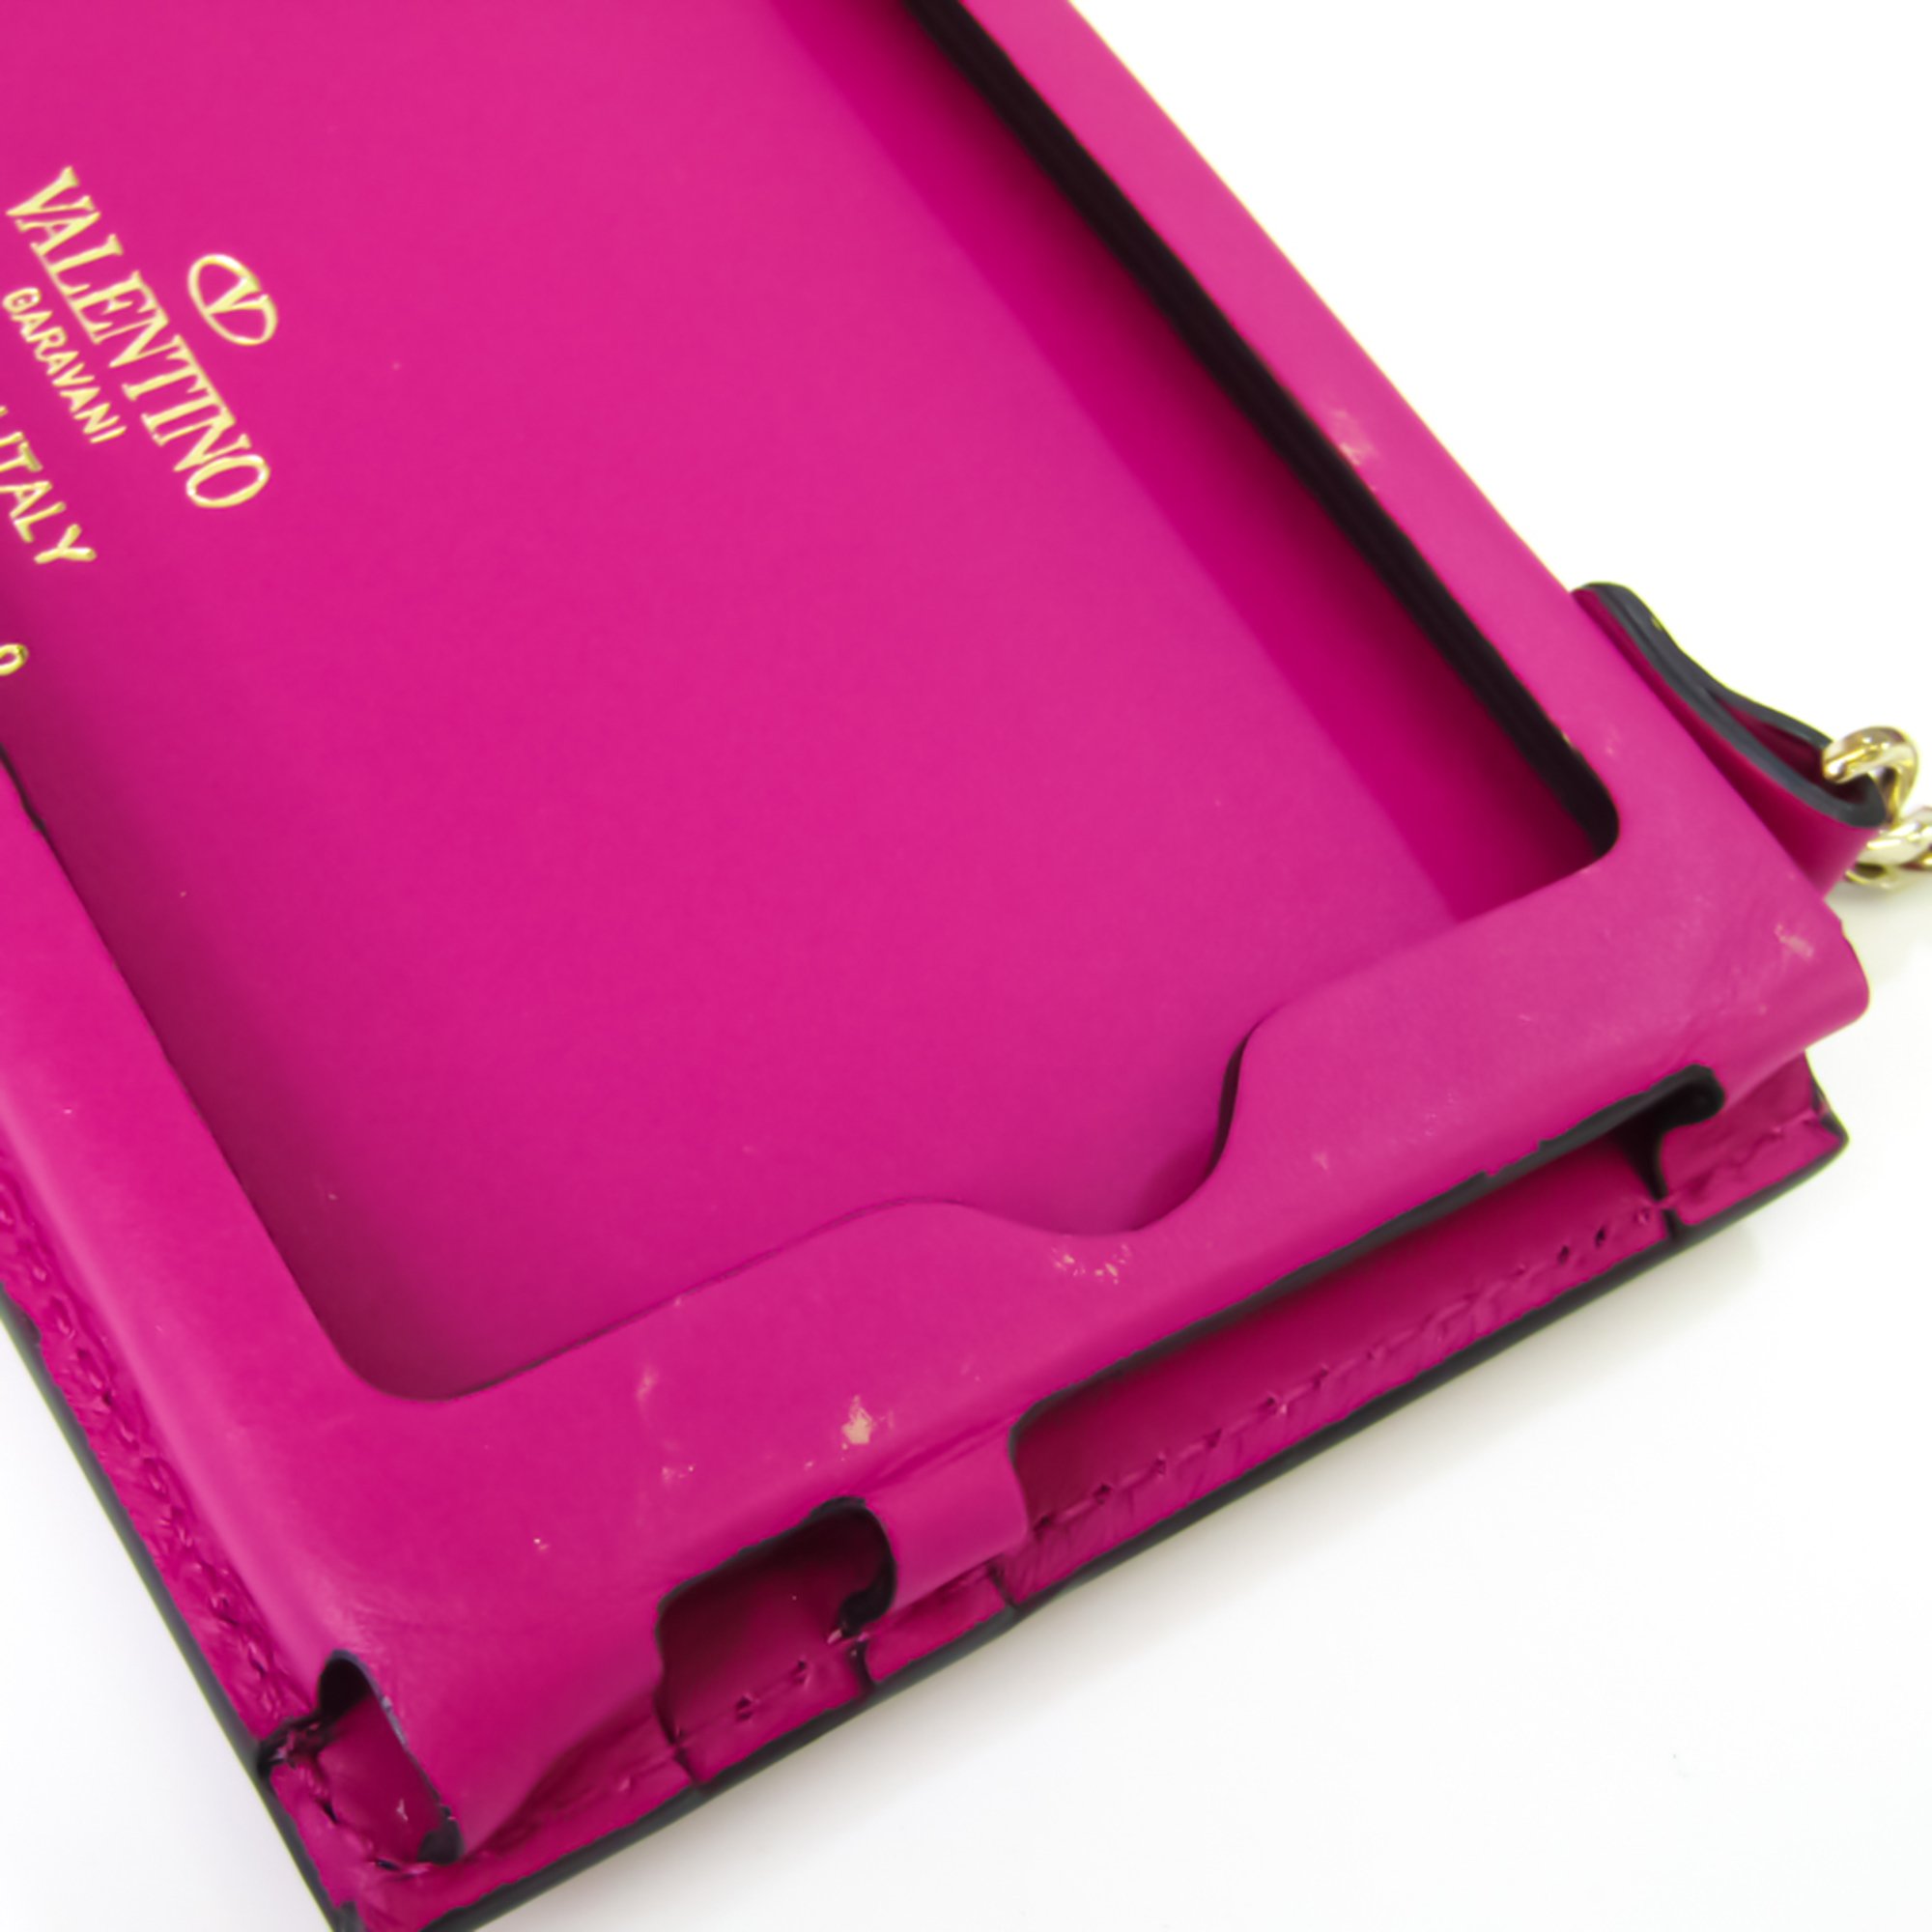 ヴァレンティノ・ガラヴァーニ(Valentino Garavani) レザー バンパー iPhone 6s 対応 ピンク